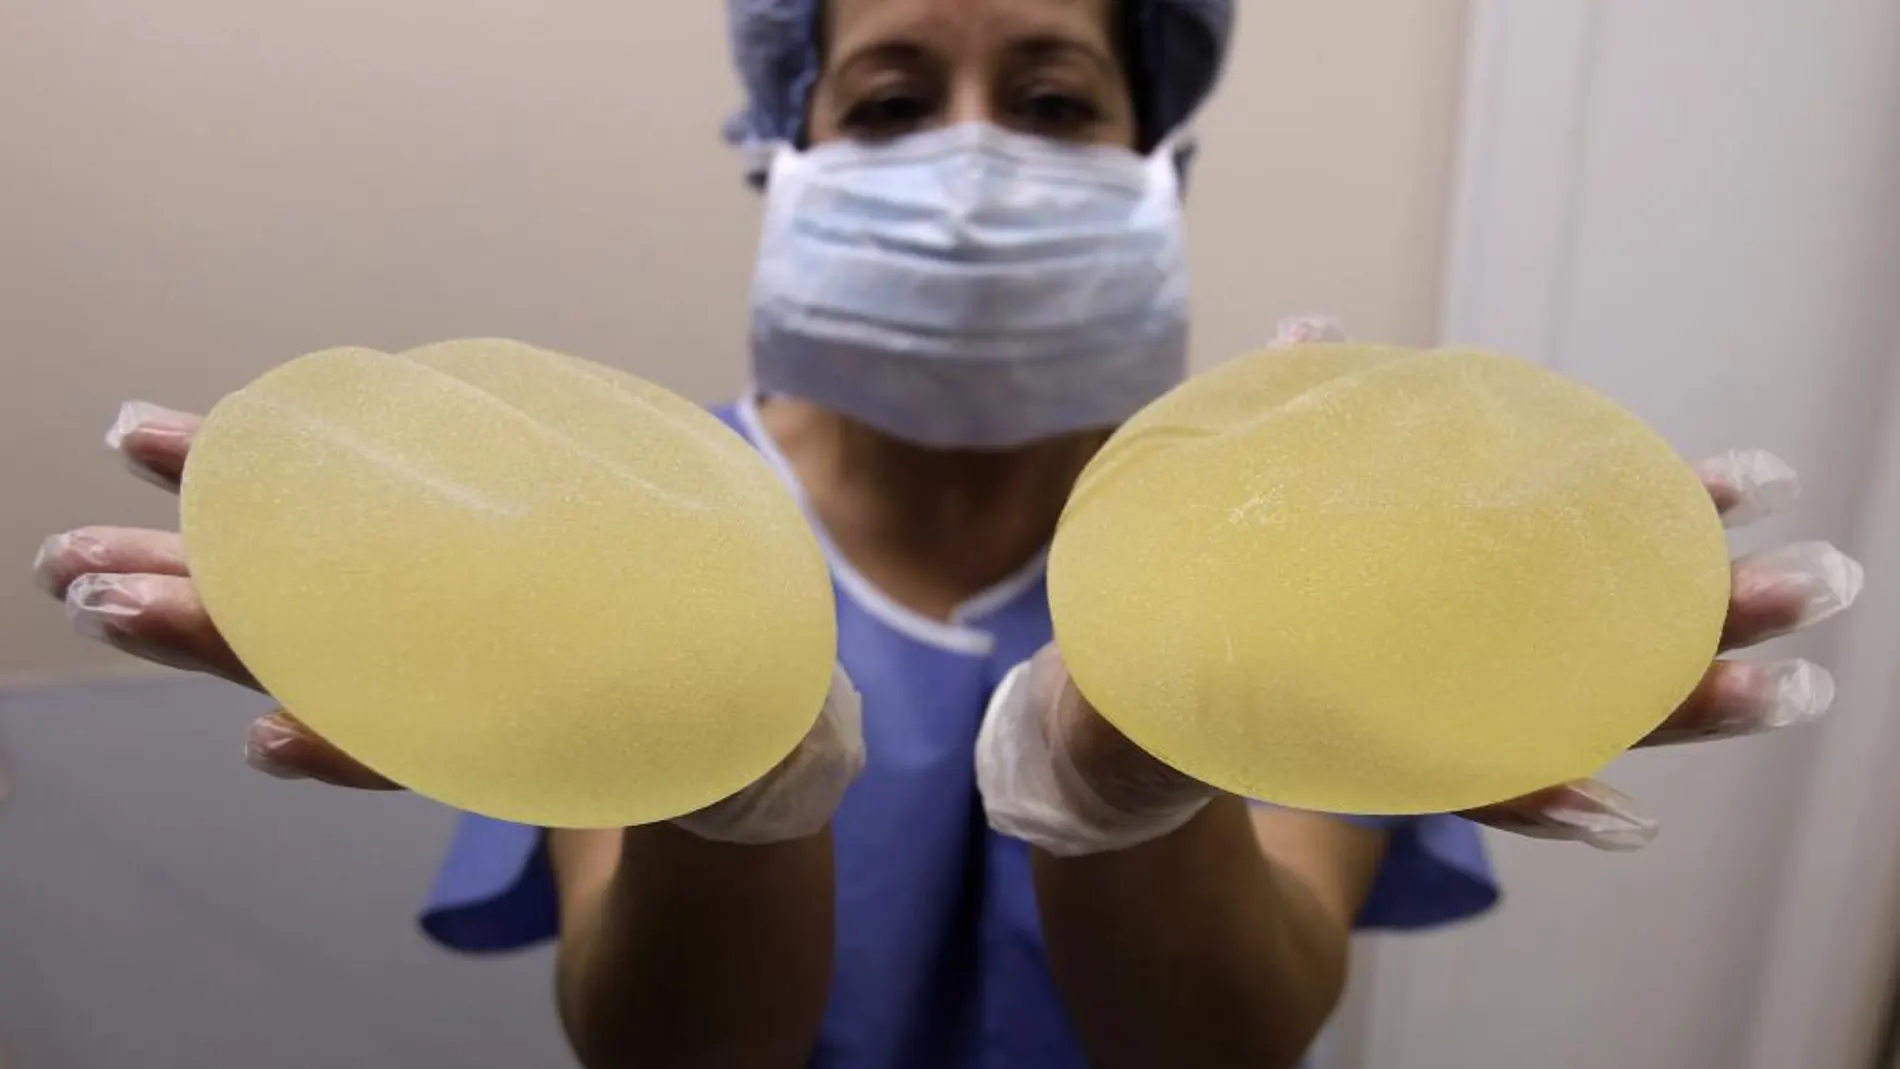 Unas prótesis mamarias han provocado cáncer en 350 mujeres en EE UU